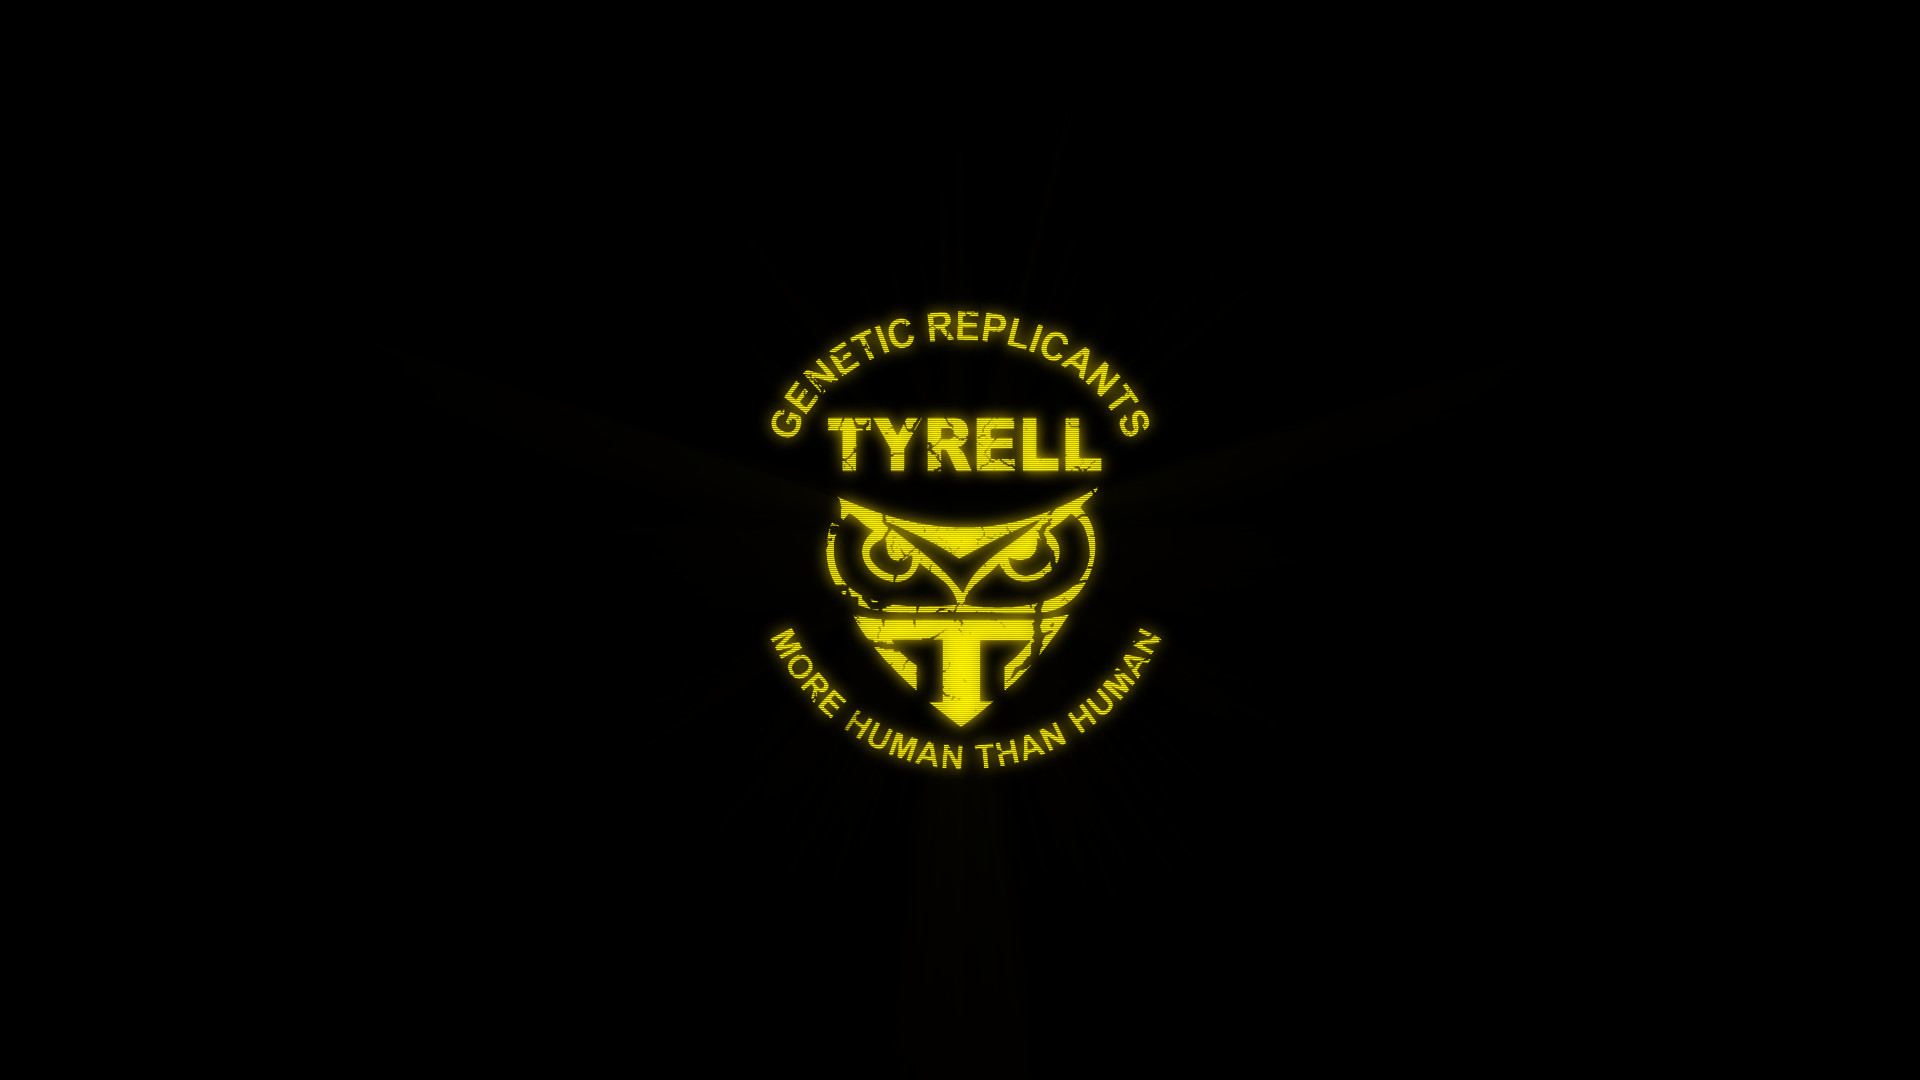 Tyrell Corp blade runner 30923